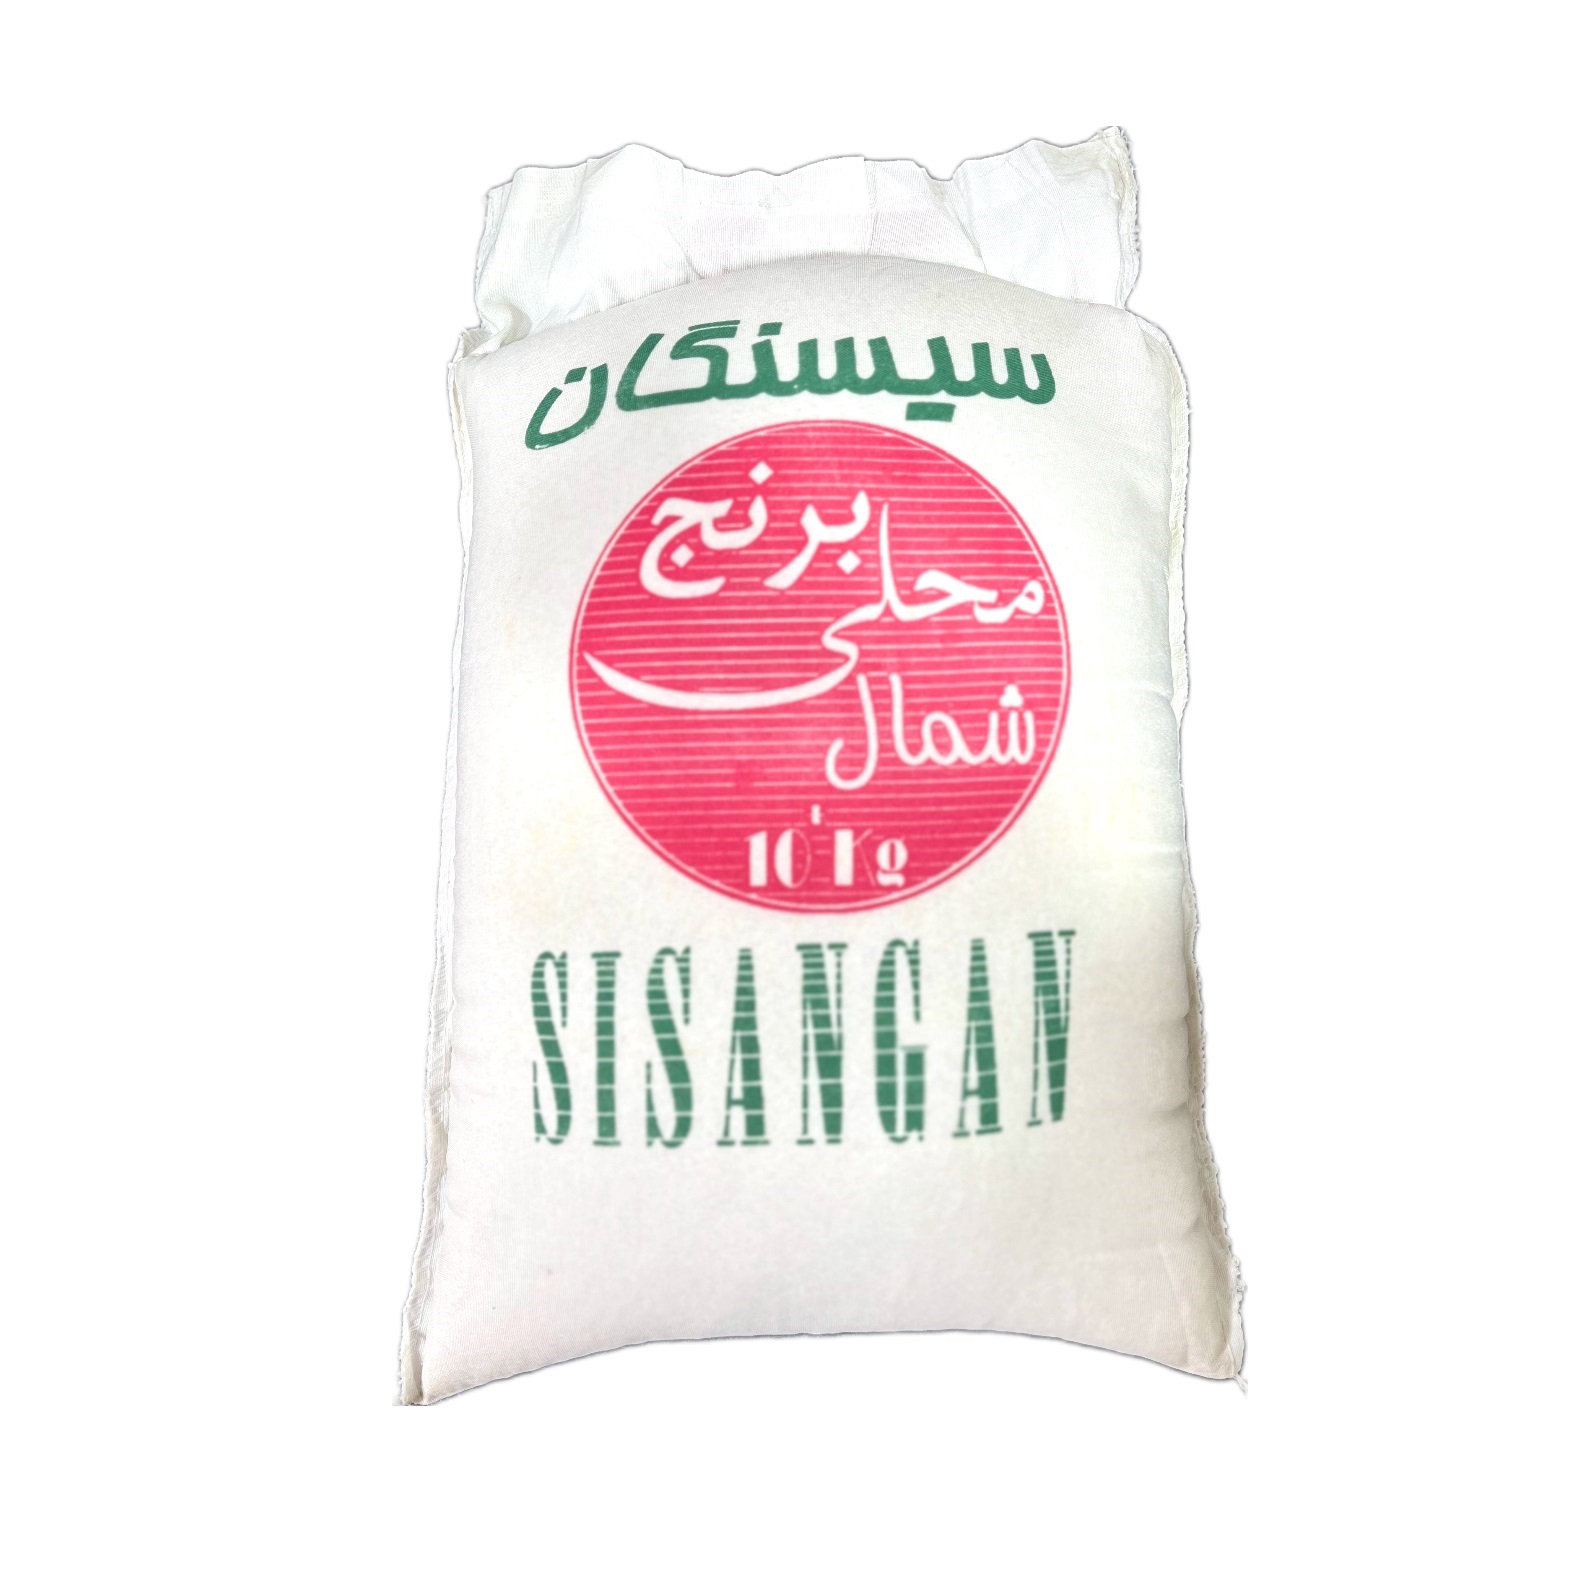 نکته خرید - قیمت روز برنج طارم اعیونی سیسنگان - 10 کیلوگرم خرید